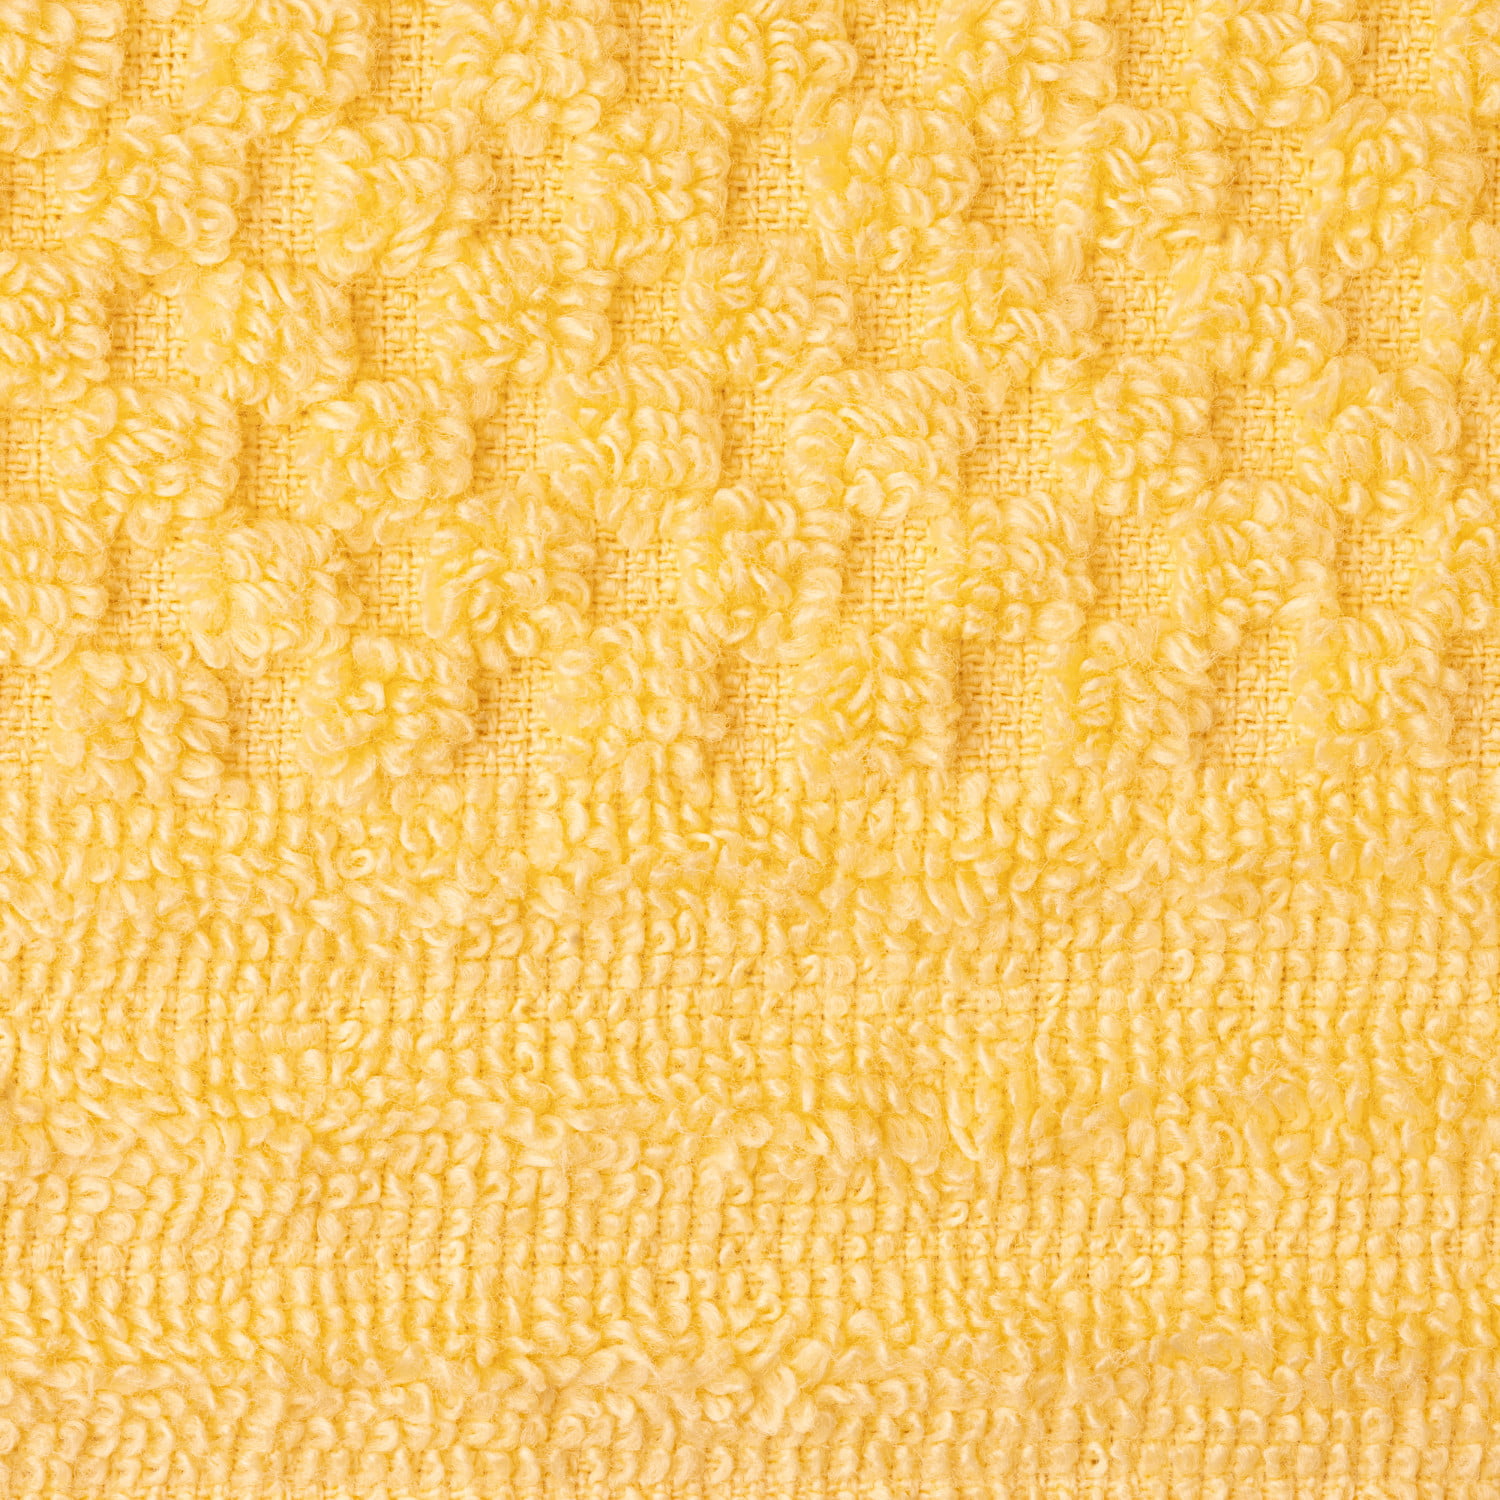 Martha Stewart Everyday Texture Towel 6 Piece Set - Alloy